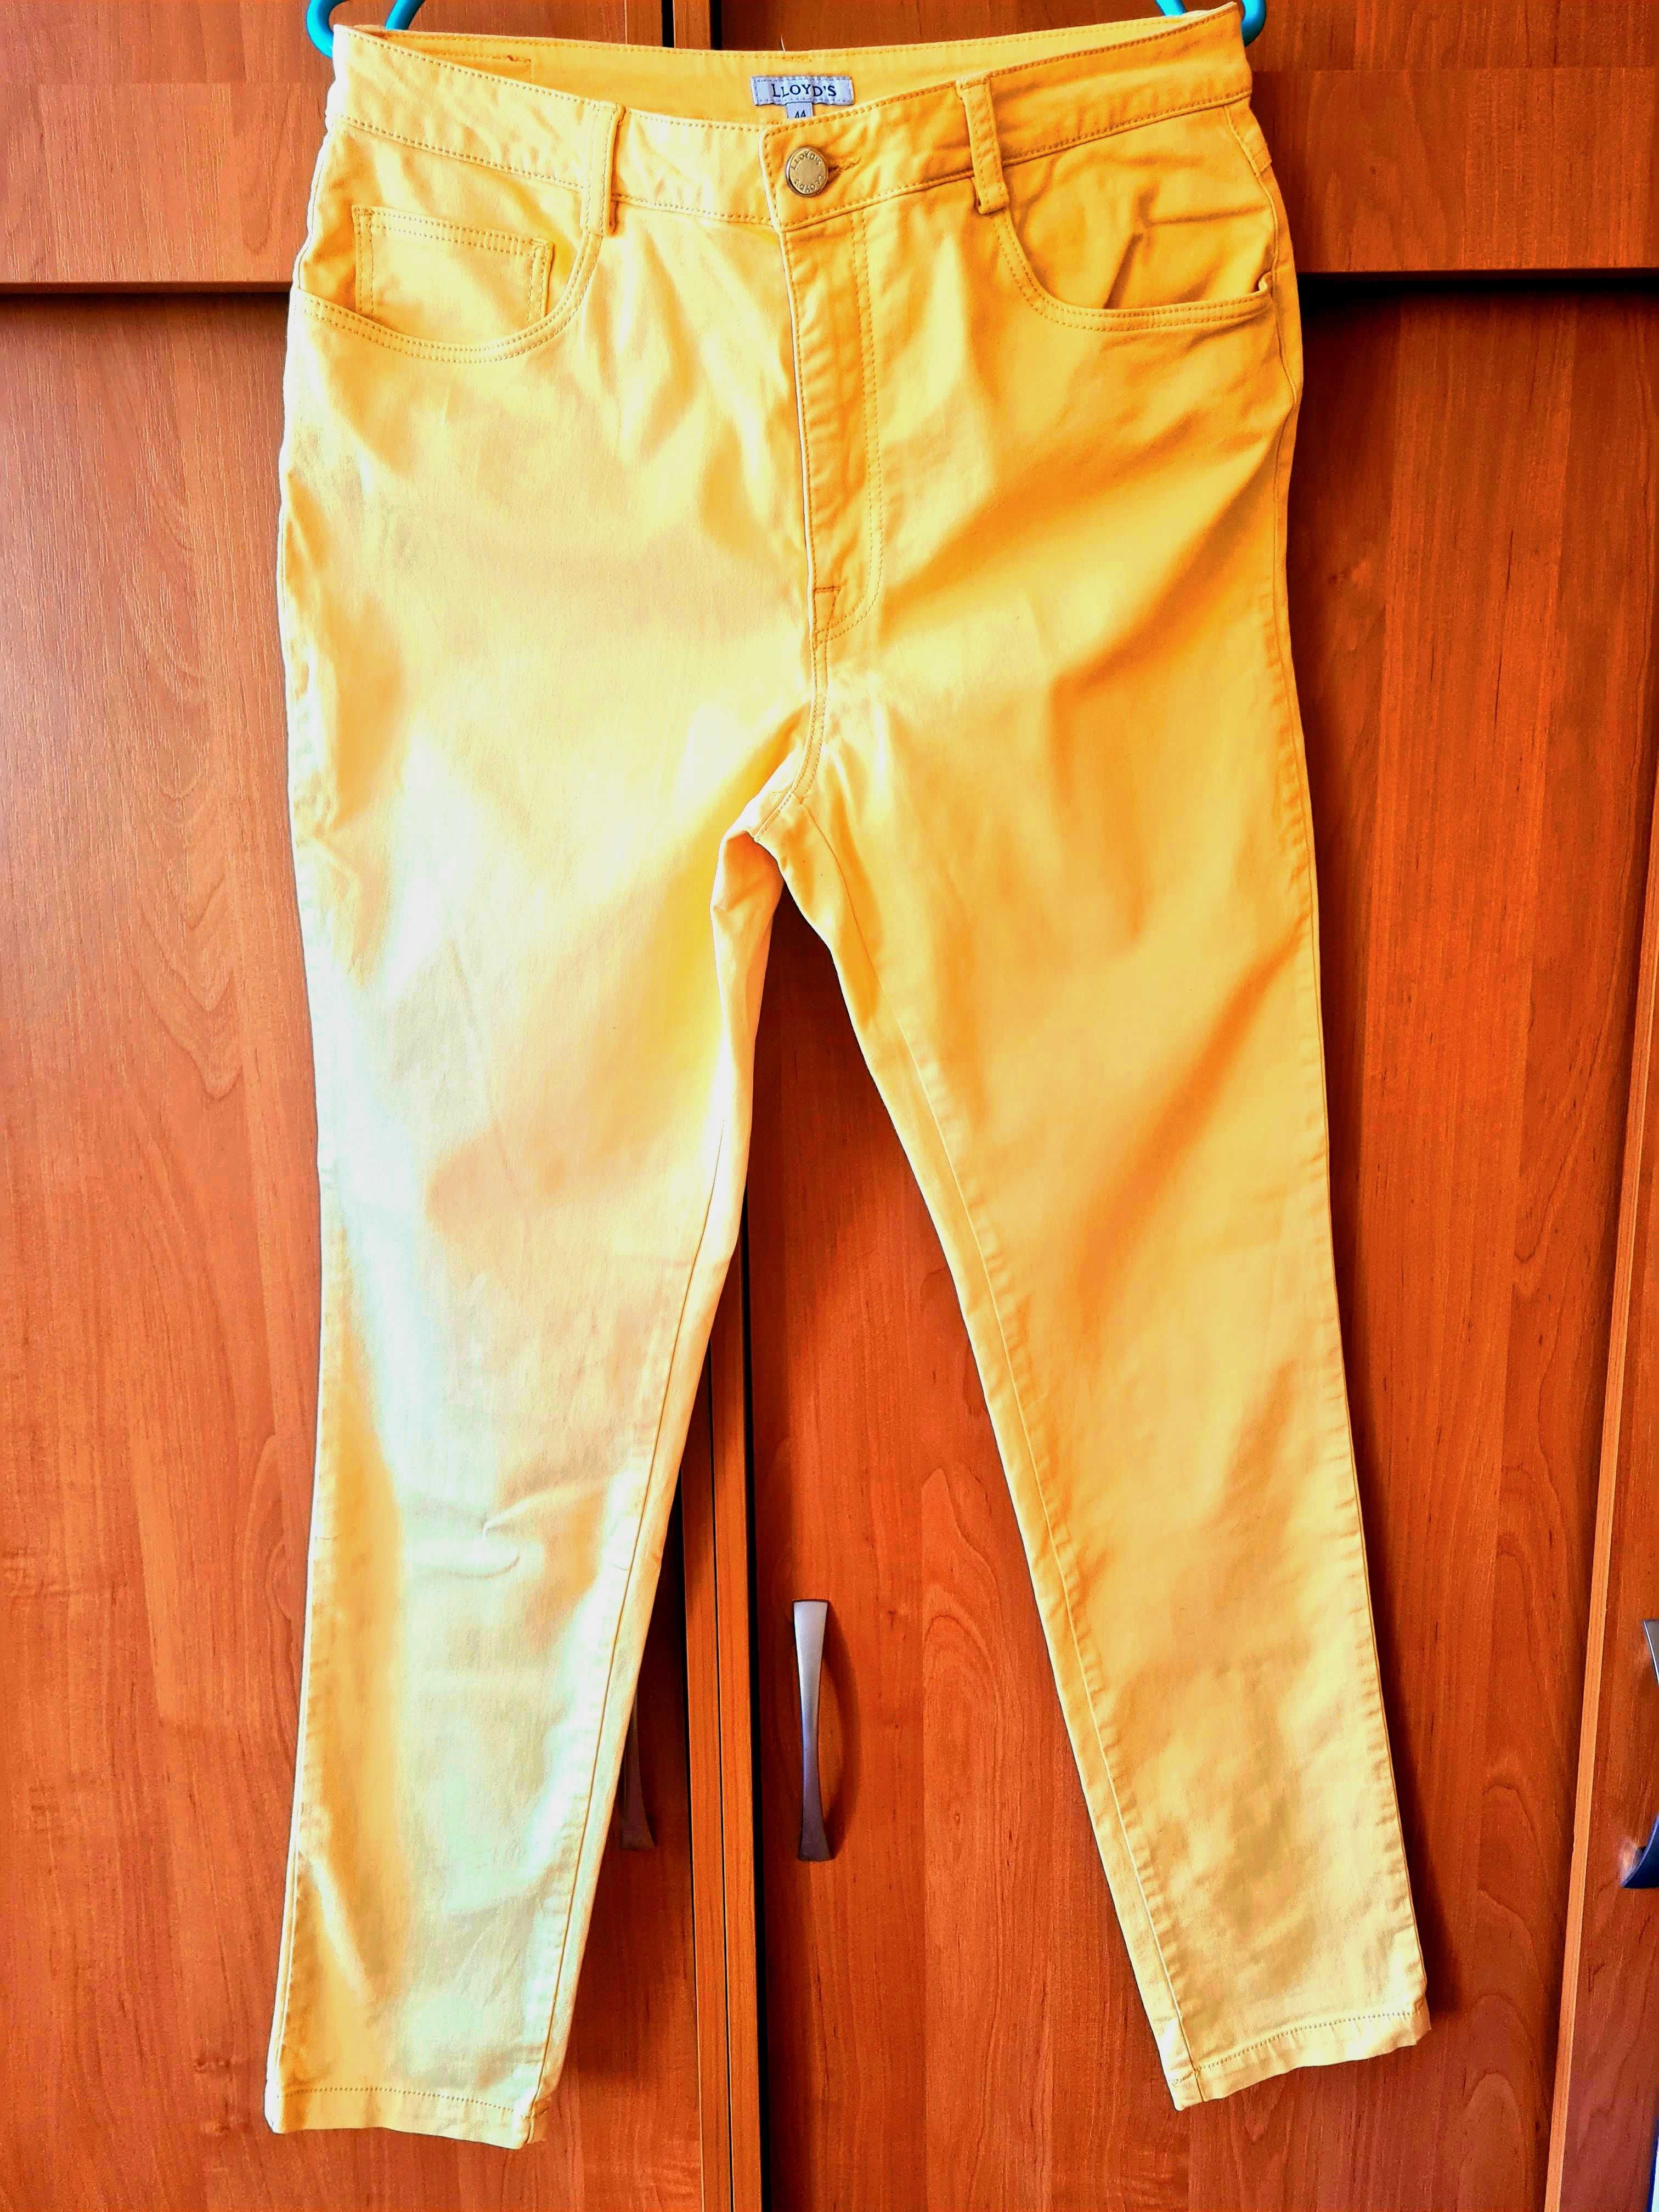 Nowe spodnie w słonecznym kolorze, roz. 44, bawełna 97%, hiszpańskie